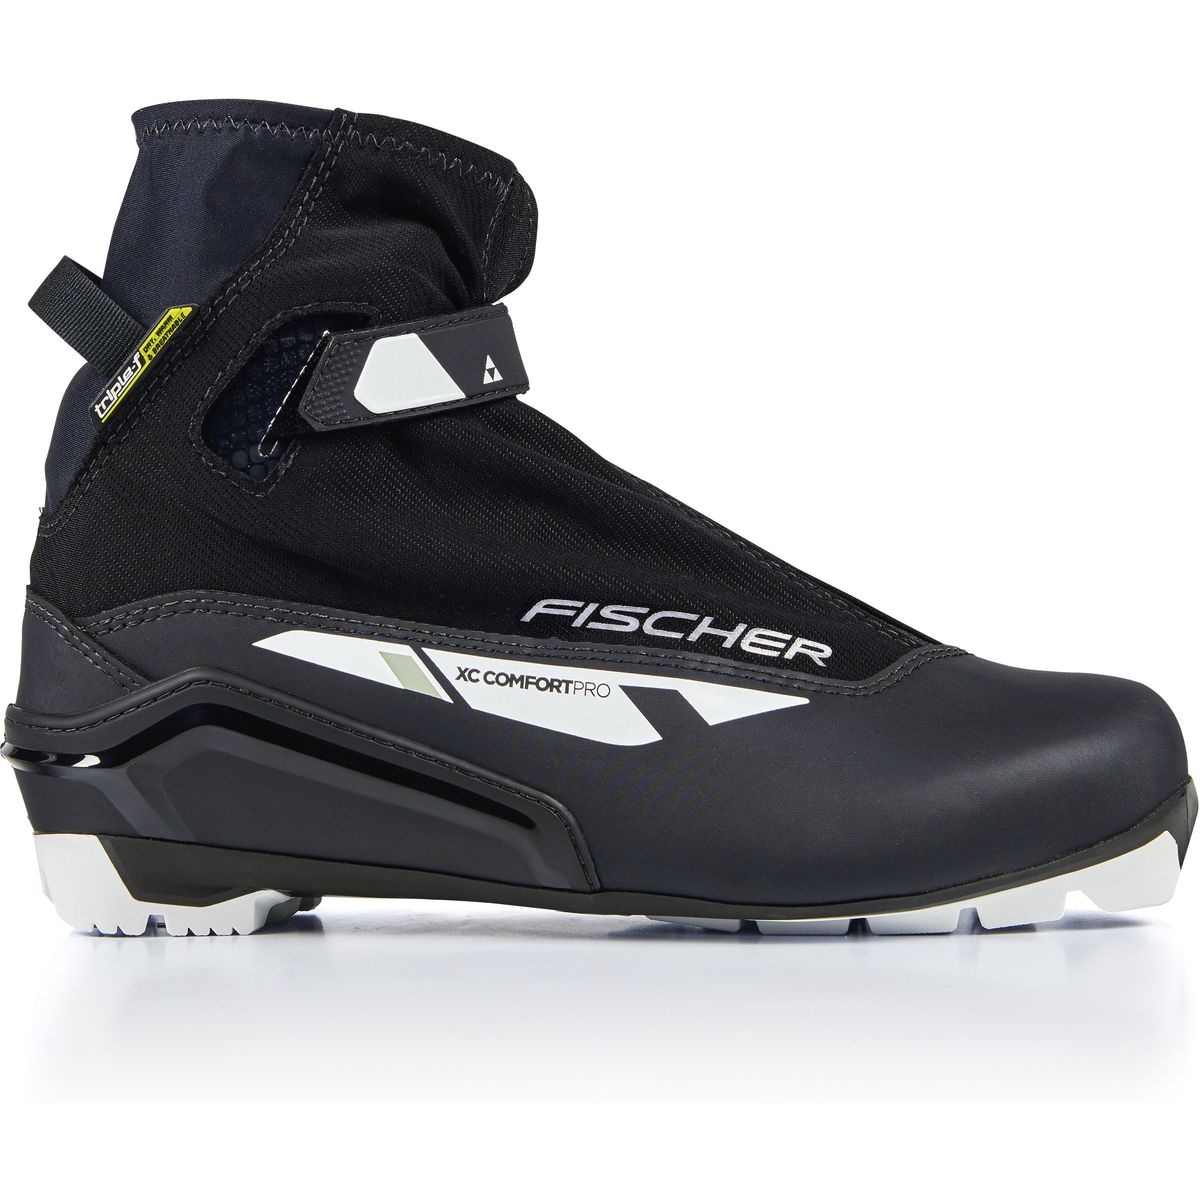 Fischer XC Comfort Pro Langlaufschuhe